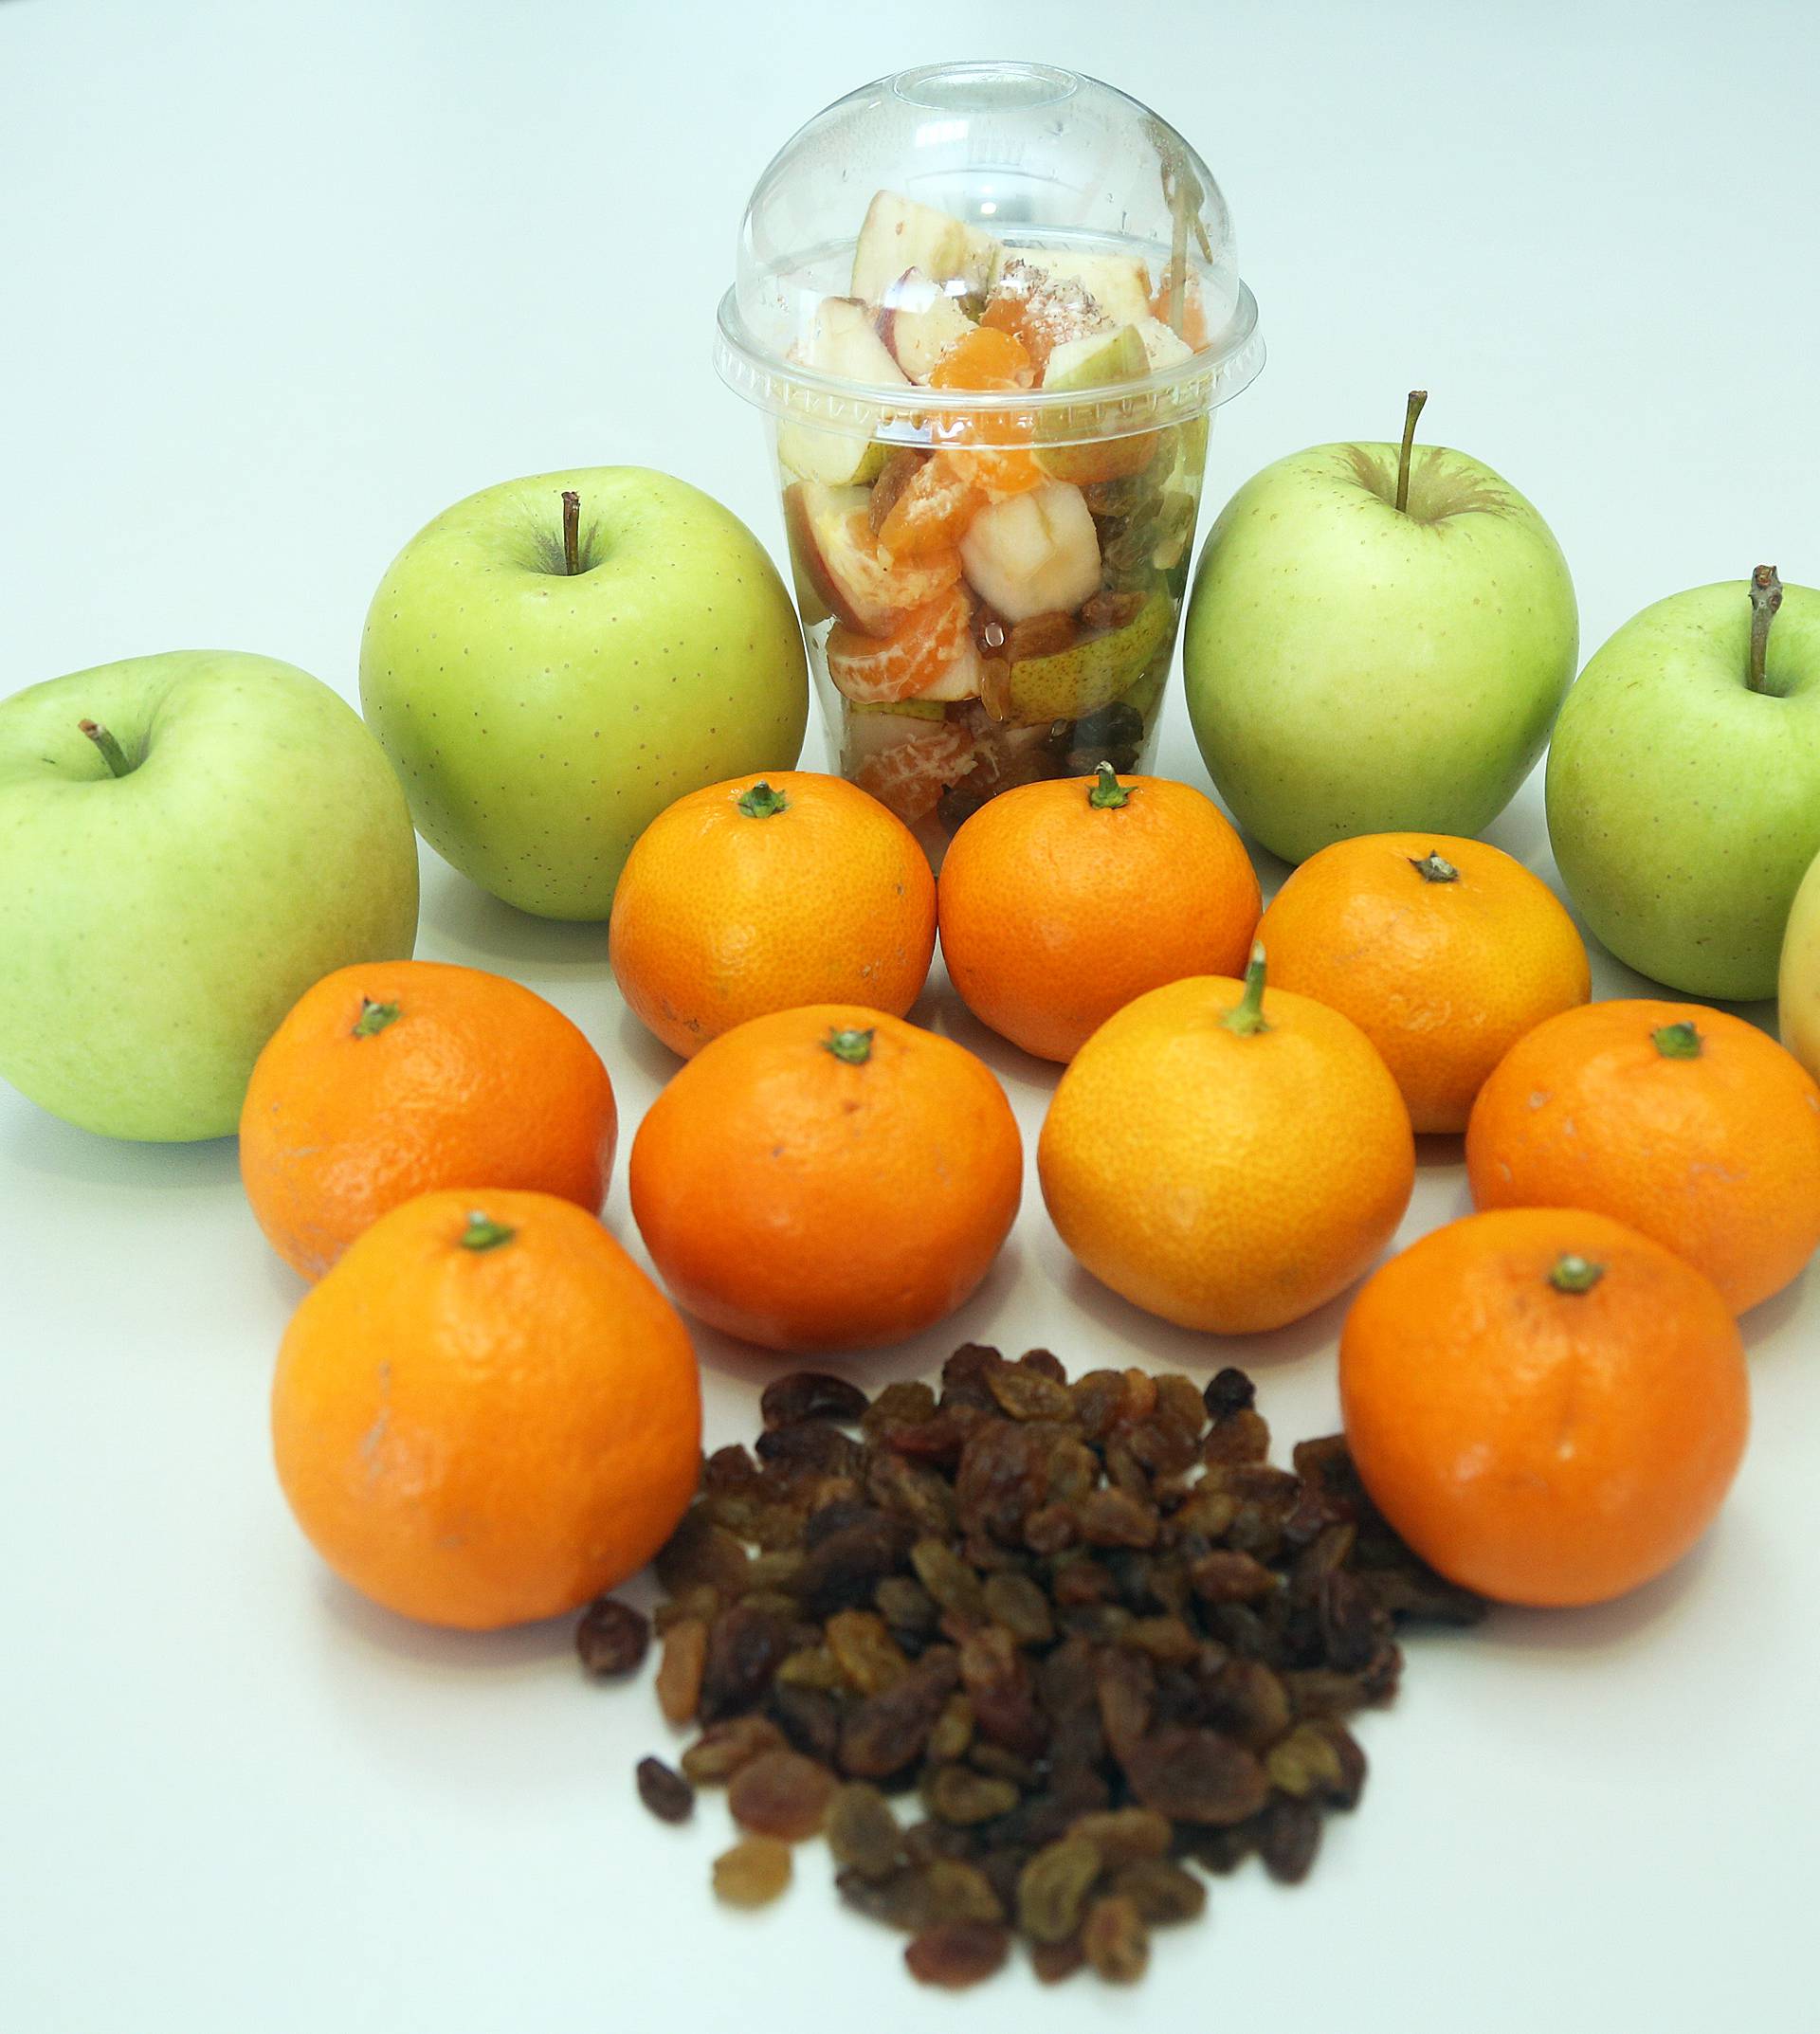 Velika prevara: Rezano voće je 3,5 puta skuplje nego "cijelo"